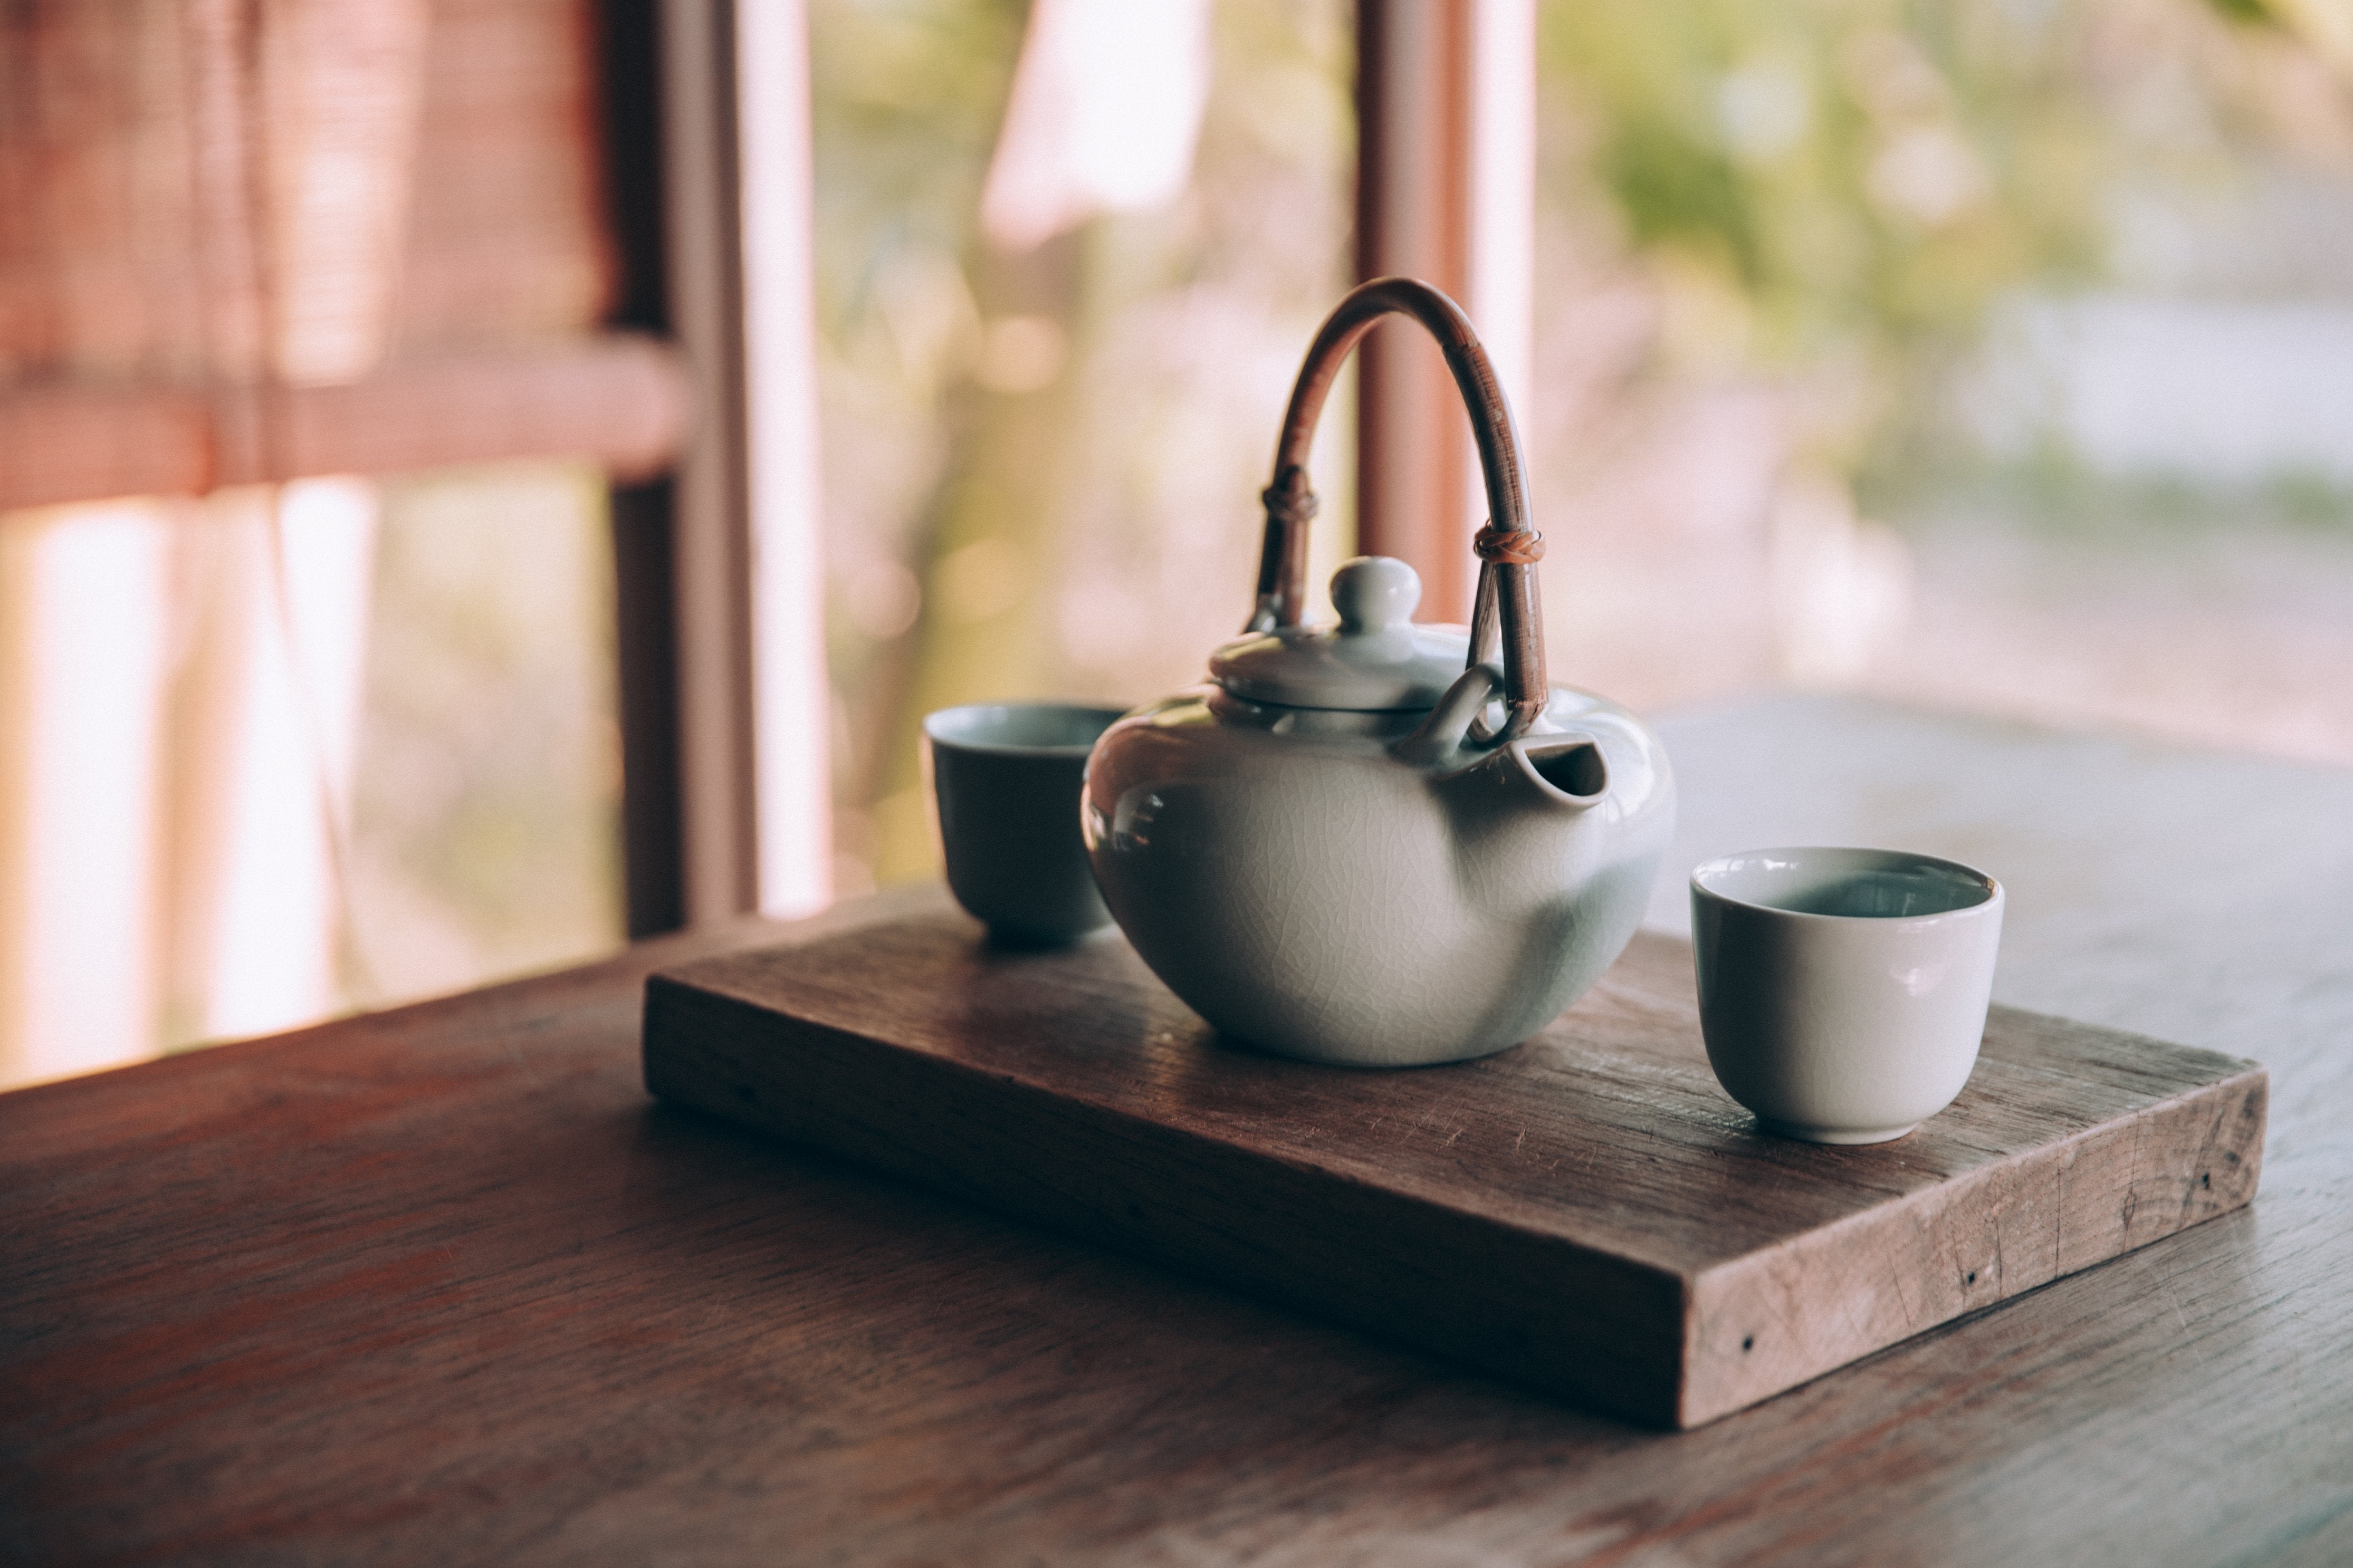 Come riutilizzare le foglie di tè: 9 idee utili e originali – Hindigena Teas